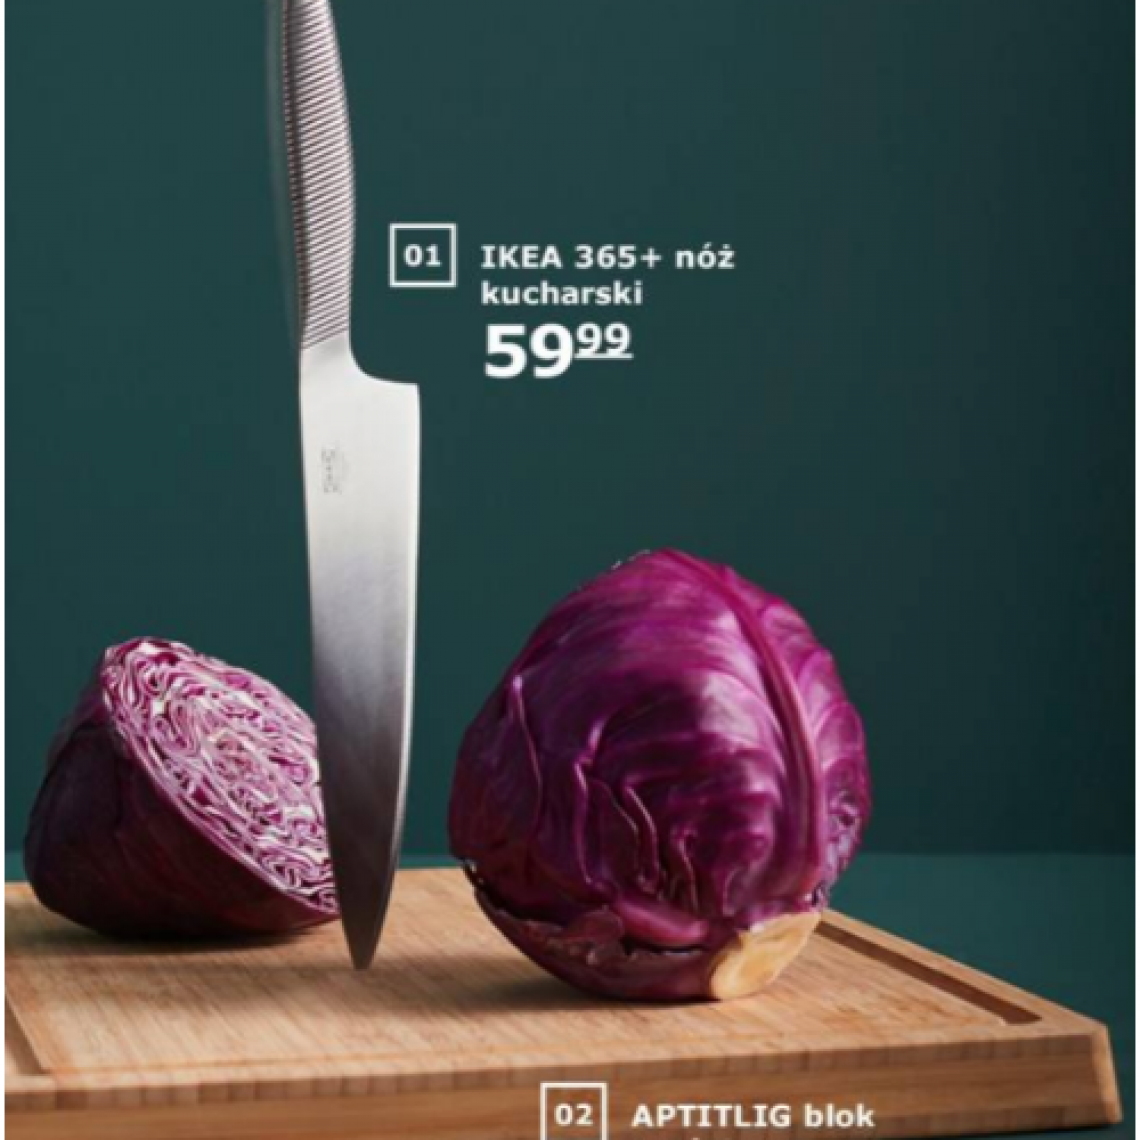 Ikea katalog - nóż IKEA